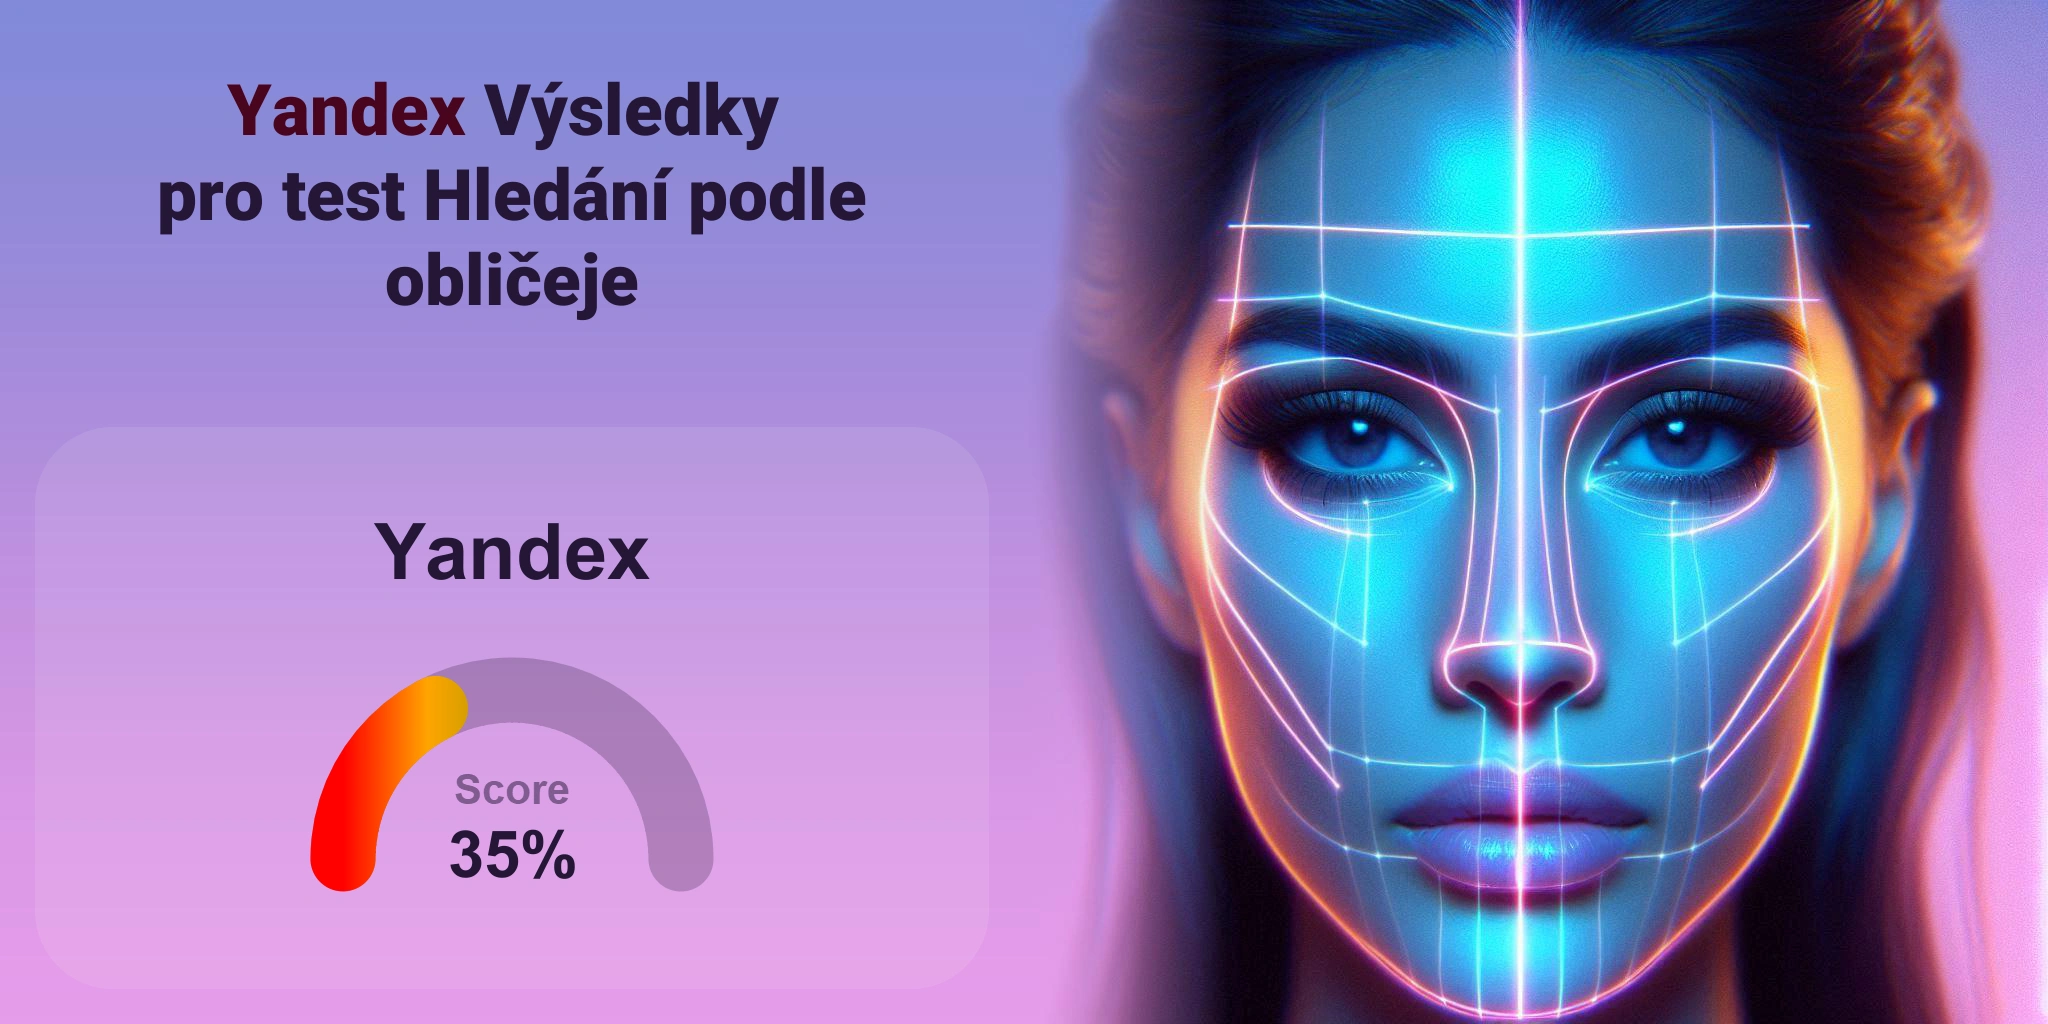 Je Yandex nejlepší pro vyhledávání obličejů?